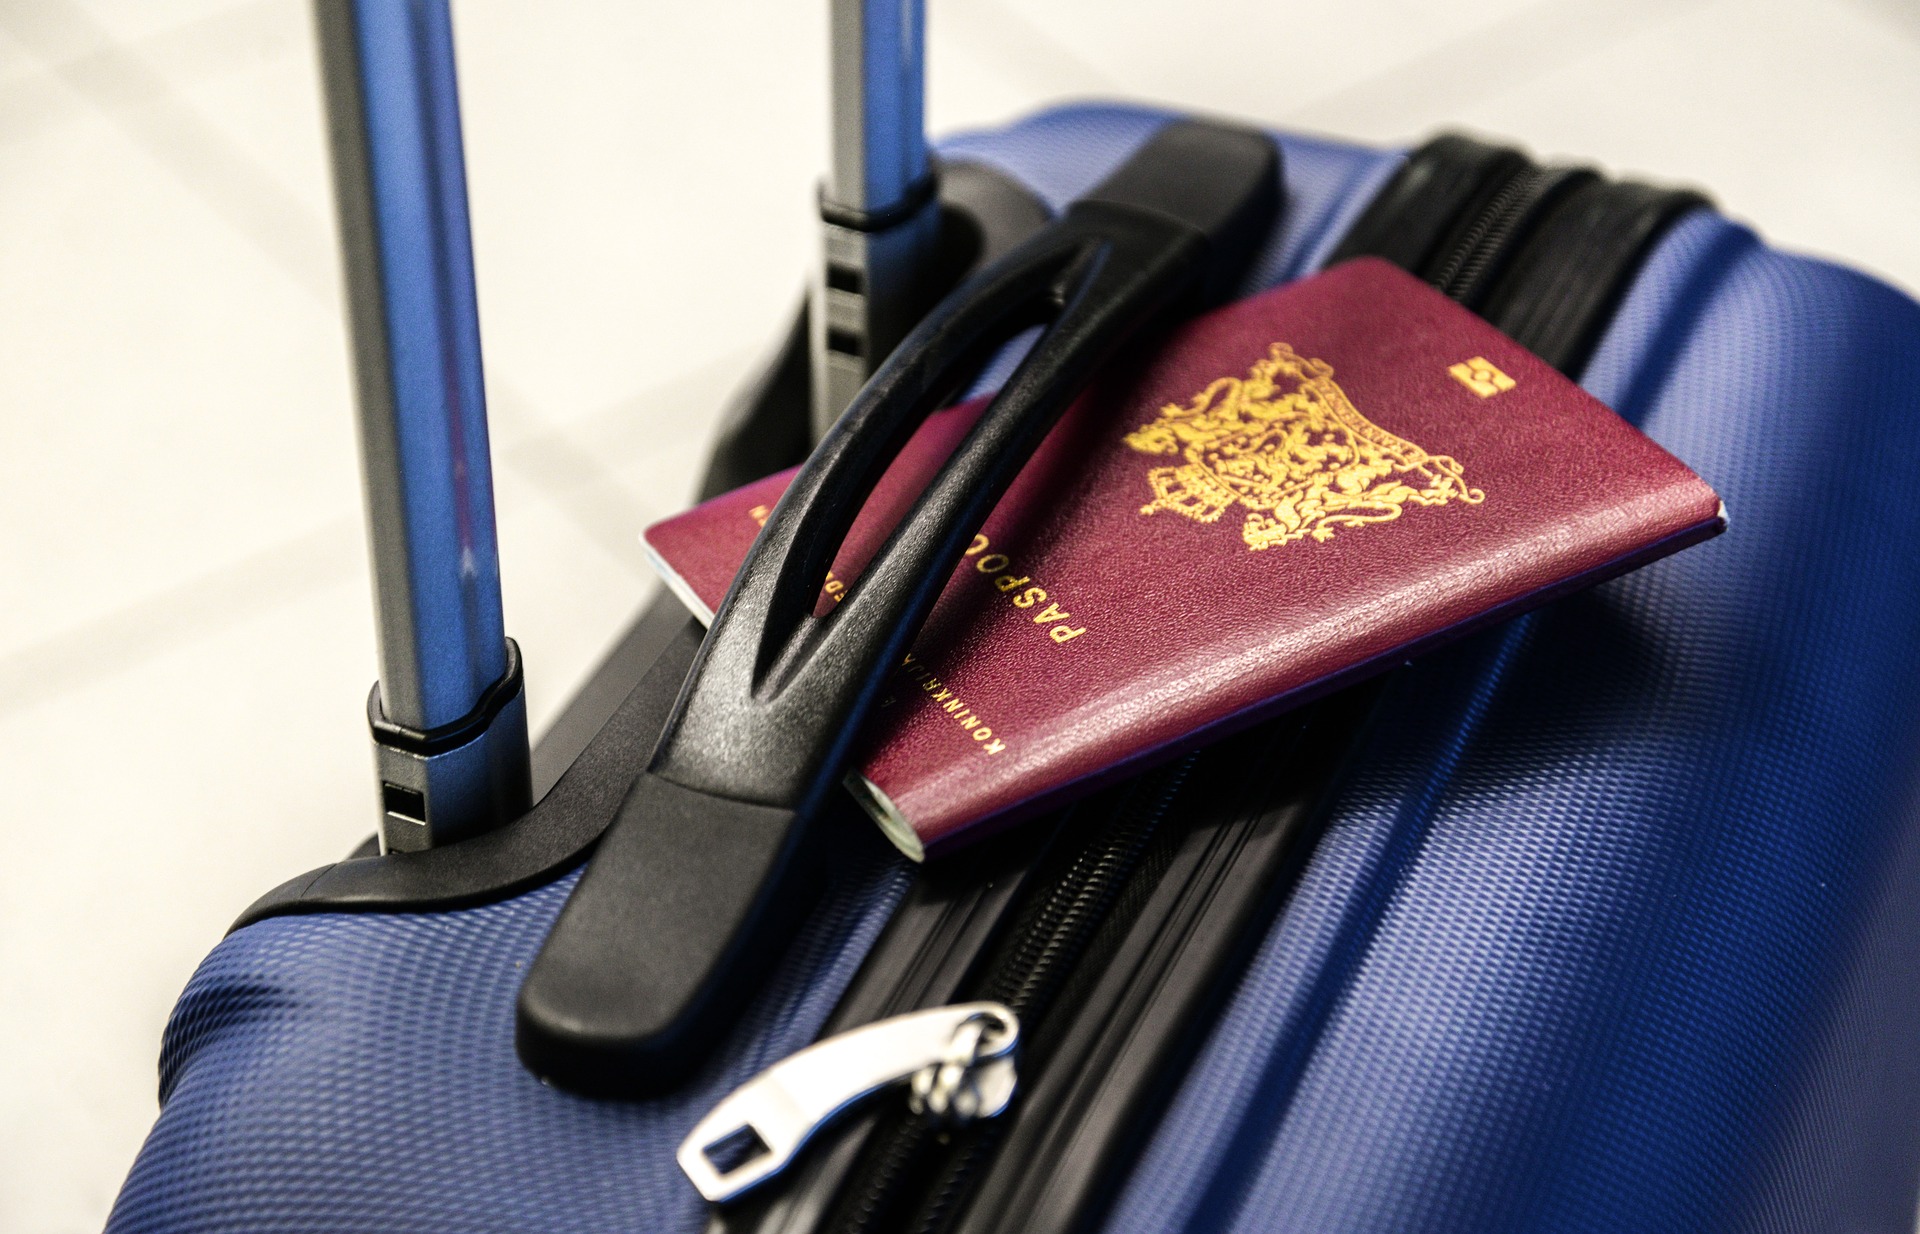 Equipaje perdido en el aeropuerto: ¡el truco para encontrar fácilmente su maleta!